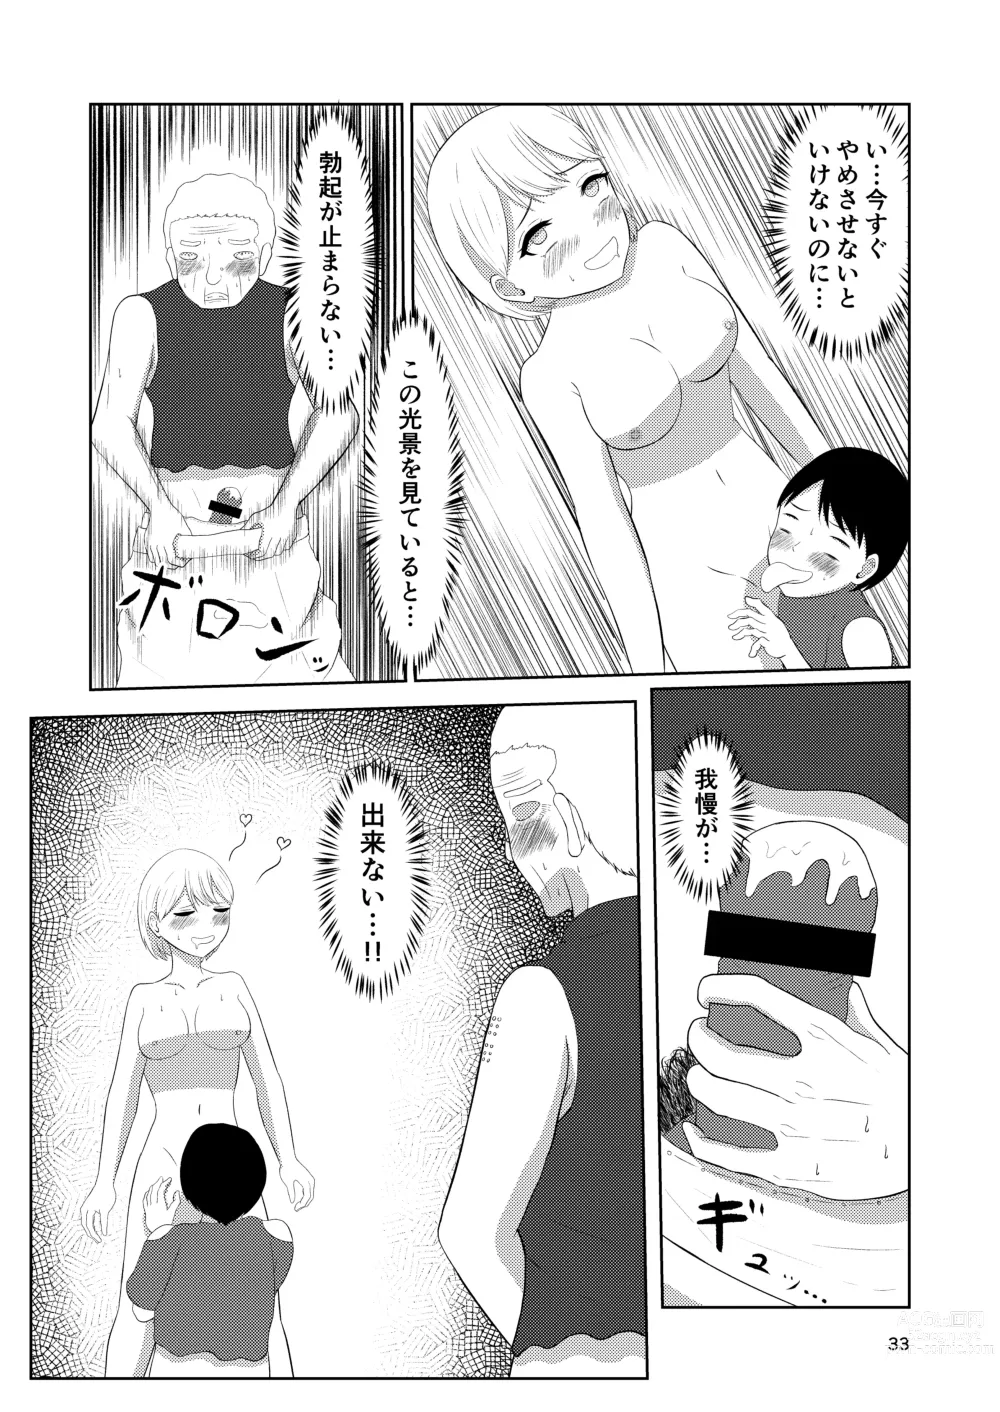 Page 33 of doujinshi Sougo Henshin no Yakata